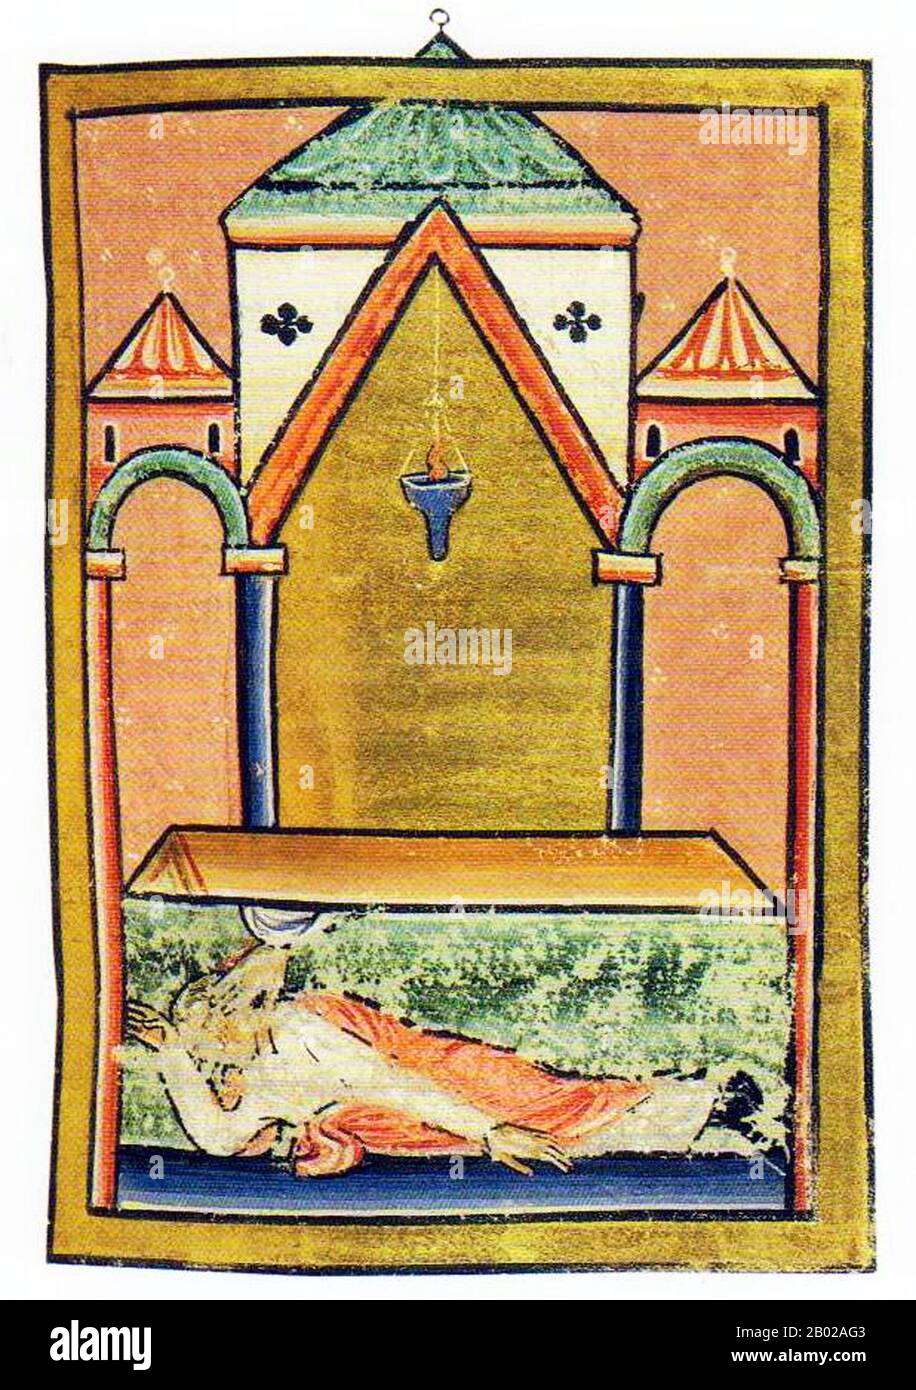 St. Cuthbert (ca. 634 - 20. März 687) war ein angelsächsische Mönch, Bischof und Einsiedler, der mit den Klöstern Melrose und Lindisfarne im Königreich Northumbria in Verbindung gebracht wurde. Nach seinem Tod wurde er einer der wichtigsten mittelalterlichen Heiligen Englands, mit einem Kult, der sich in der Durham Cathedral zentrierte. Cuthbert gilt als Schutzpatron Nordenglands. Sein Festtag ist der 20. März. Er wuchs in der Nähe des neuen Ablegers von Lindisfarne in der Melrose Abbey auf, die heute in Schottland liegt, damals aber in Northumbria war. Er hatte beschlossen, Mönch zu werden, nachdem er 651 eine Vision davon gesehen hatte, dass der St Aidan, der ist Stockfoto